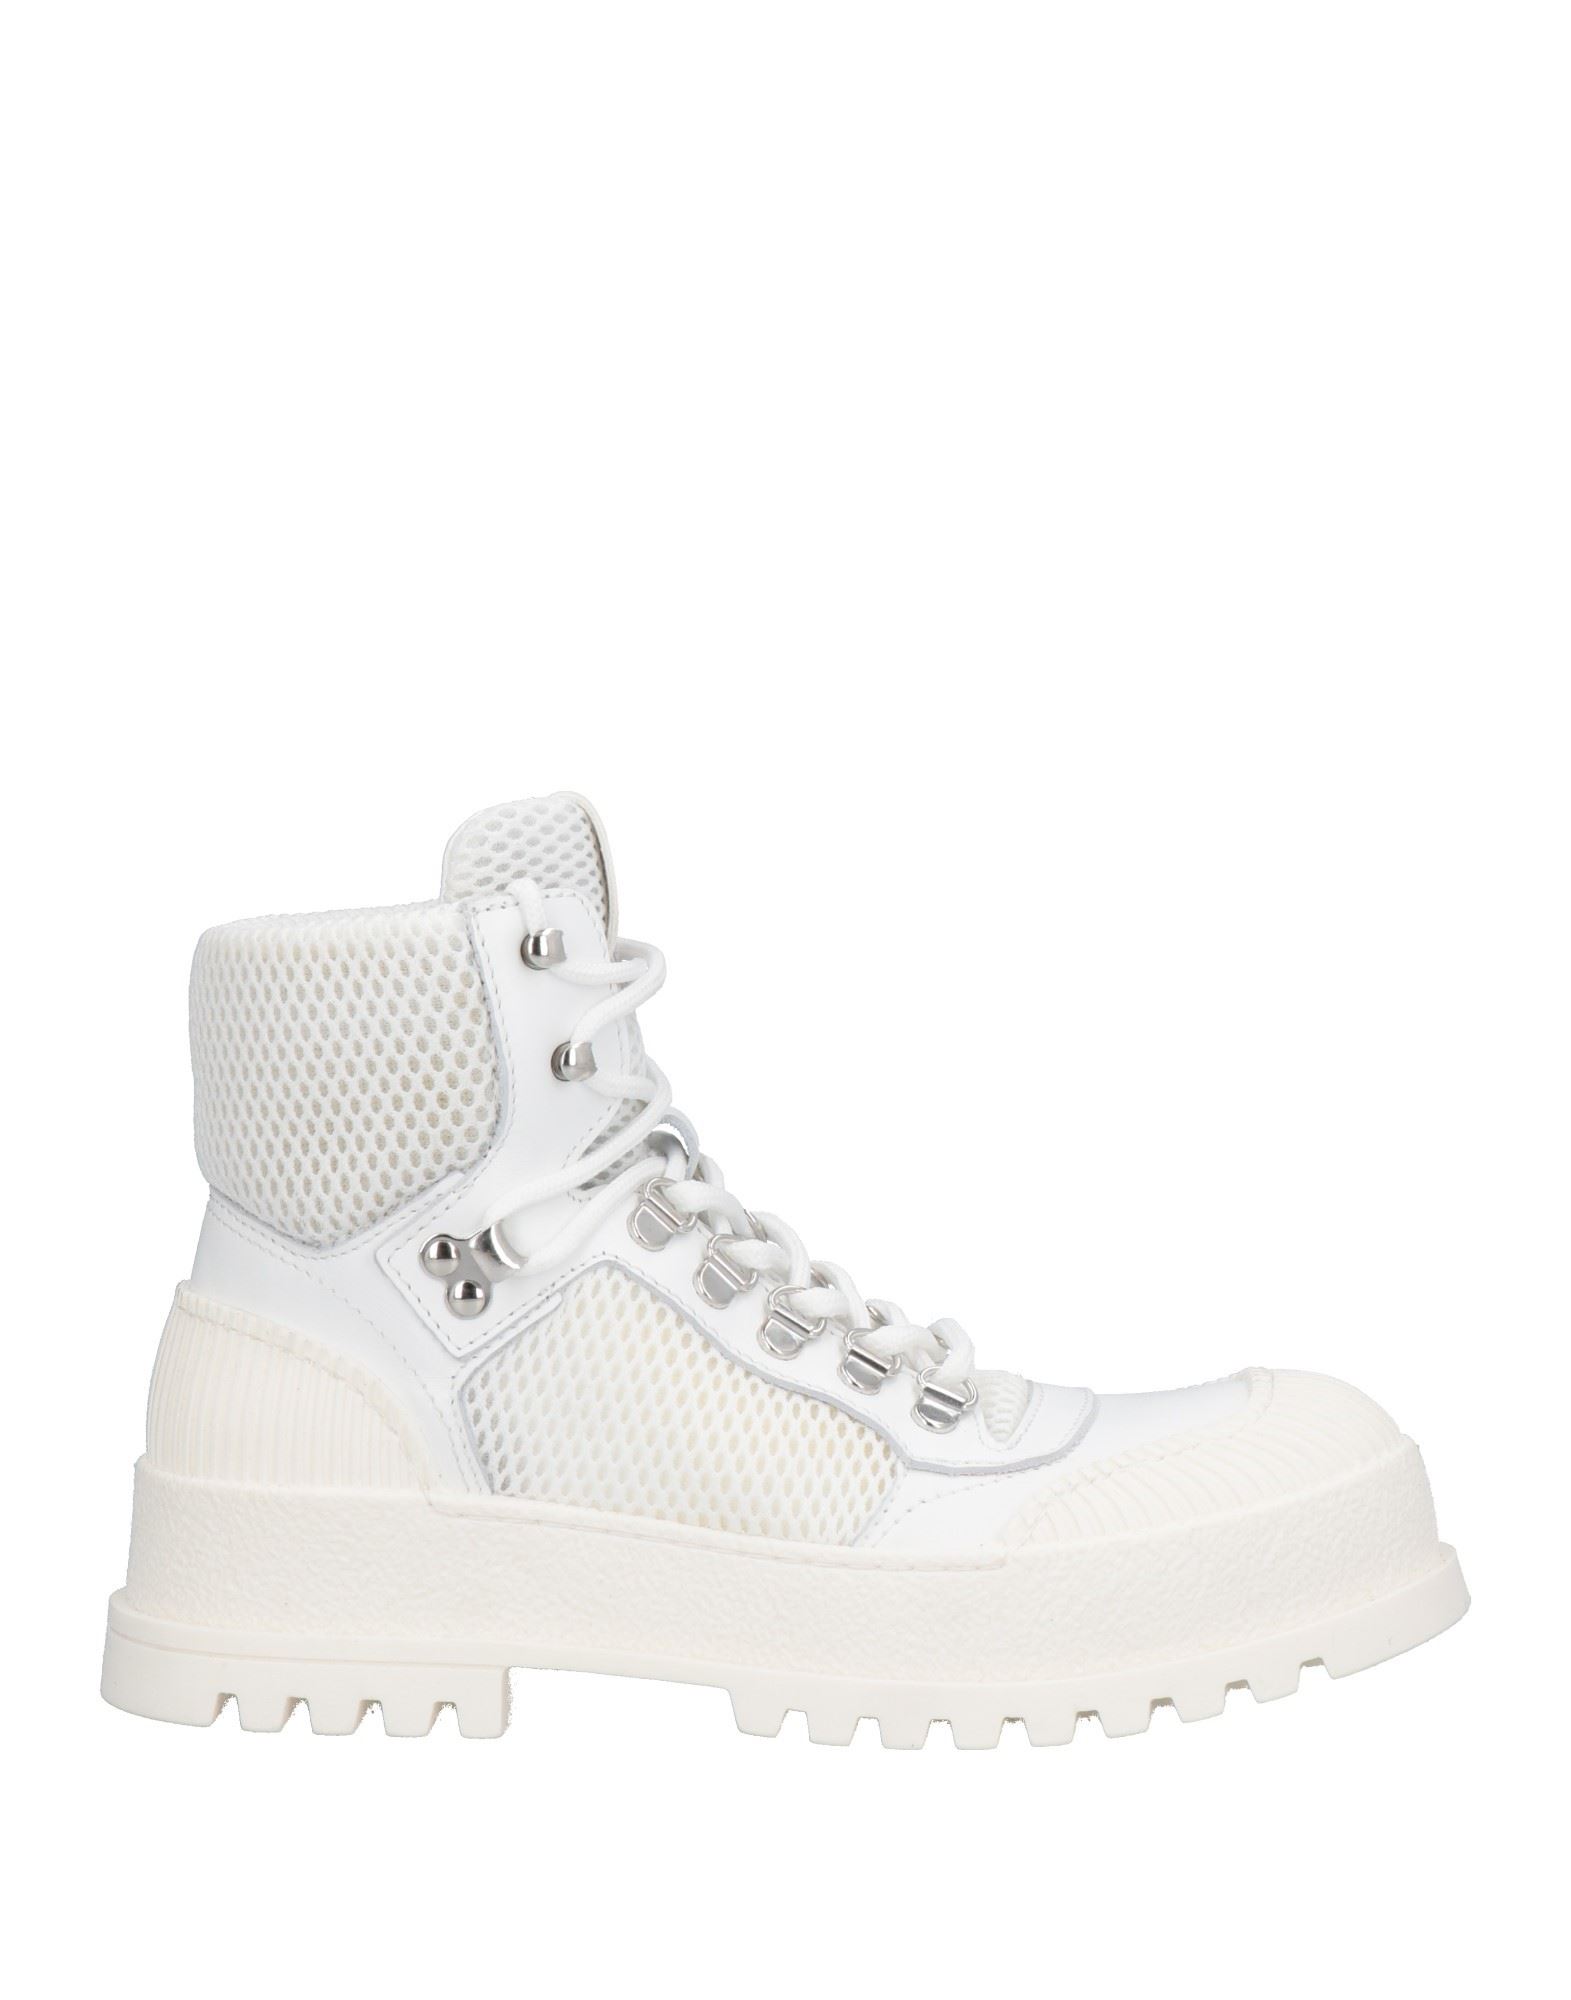 Mich E Simon Ankle Boots In White